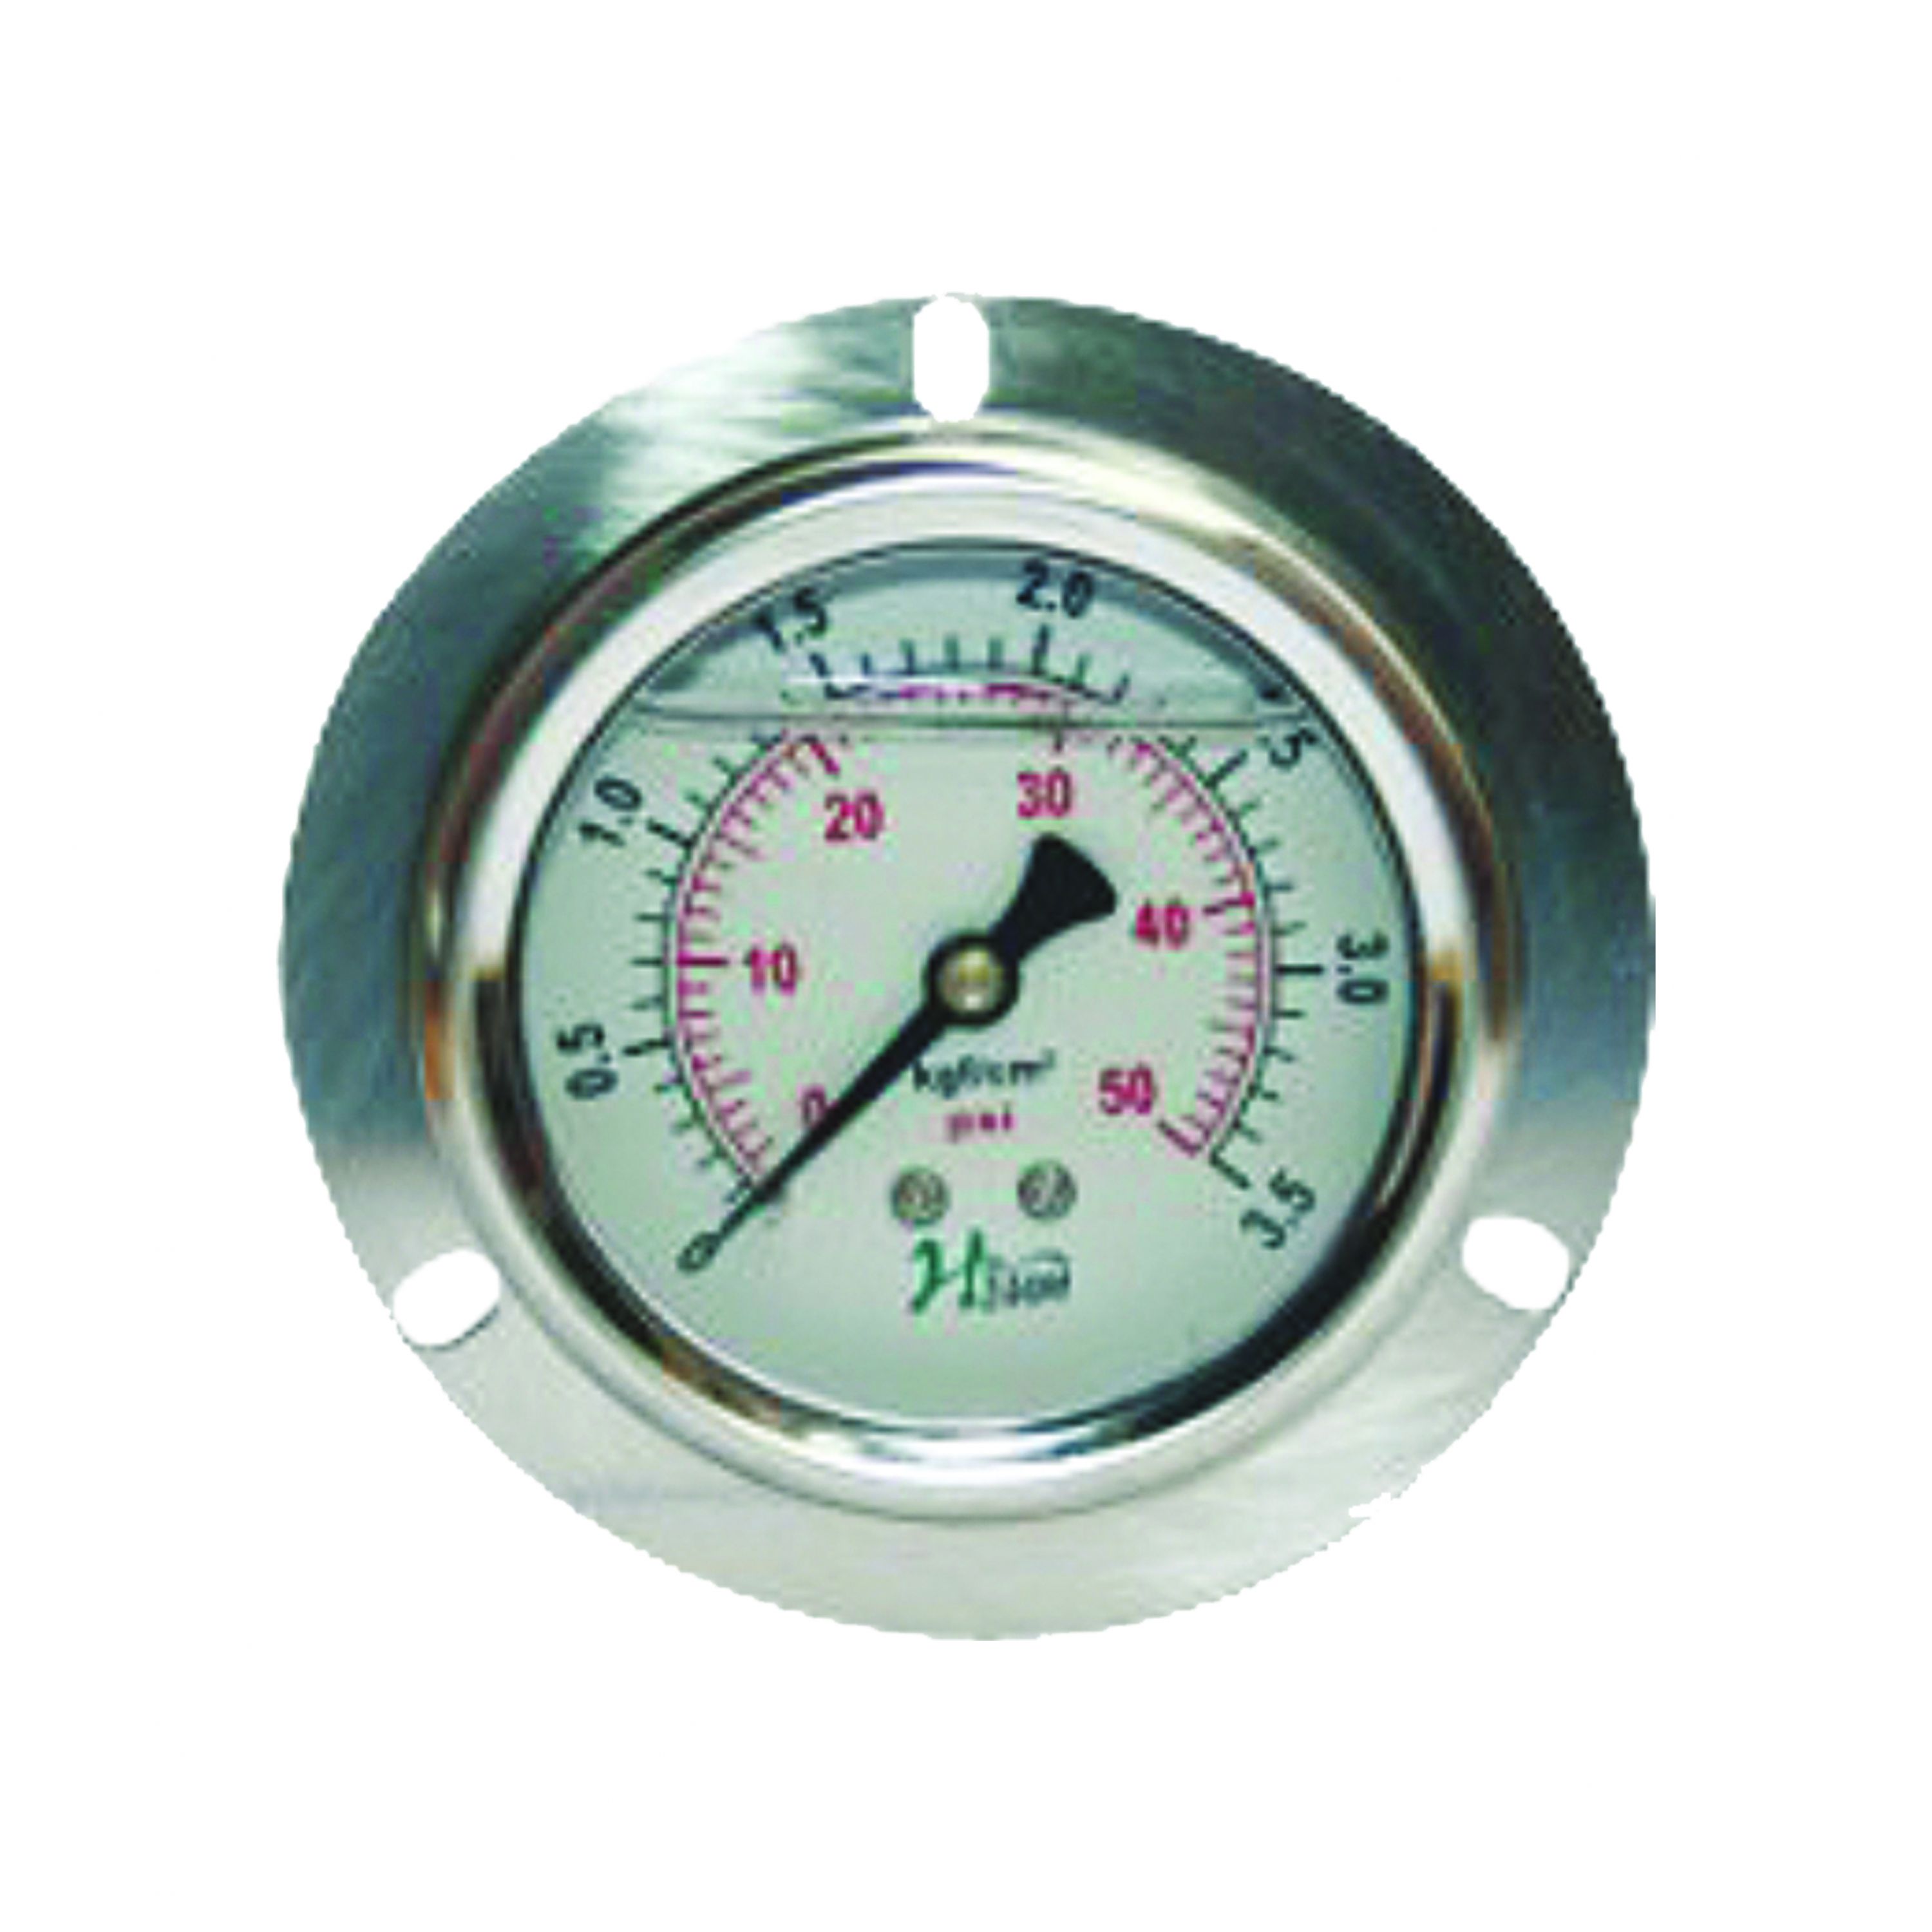 punch oil burial pressure gauge image